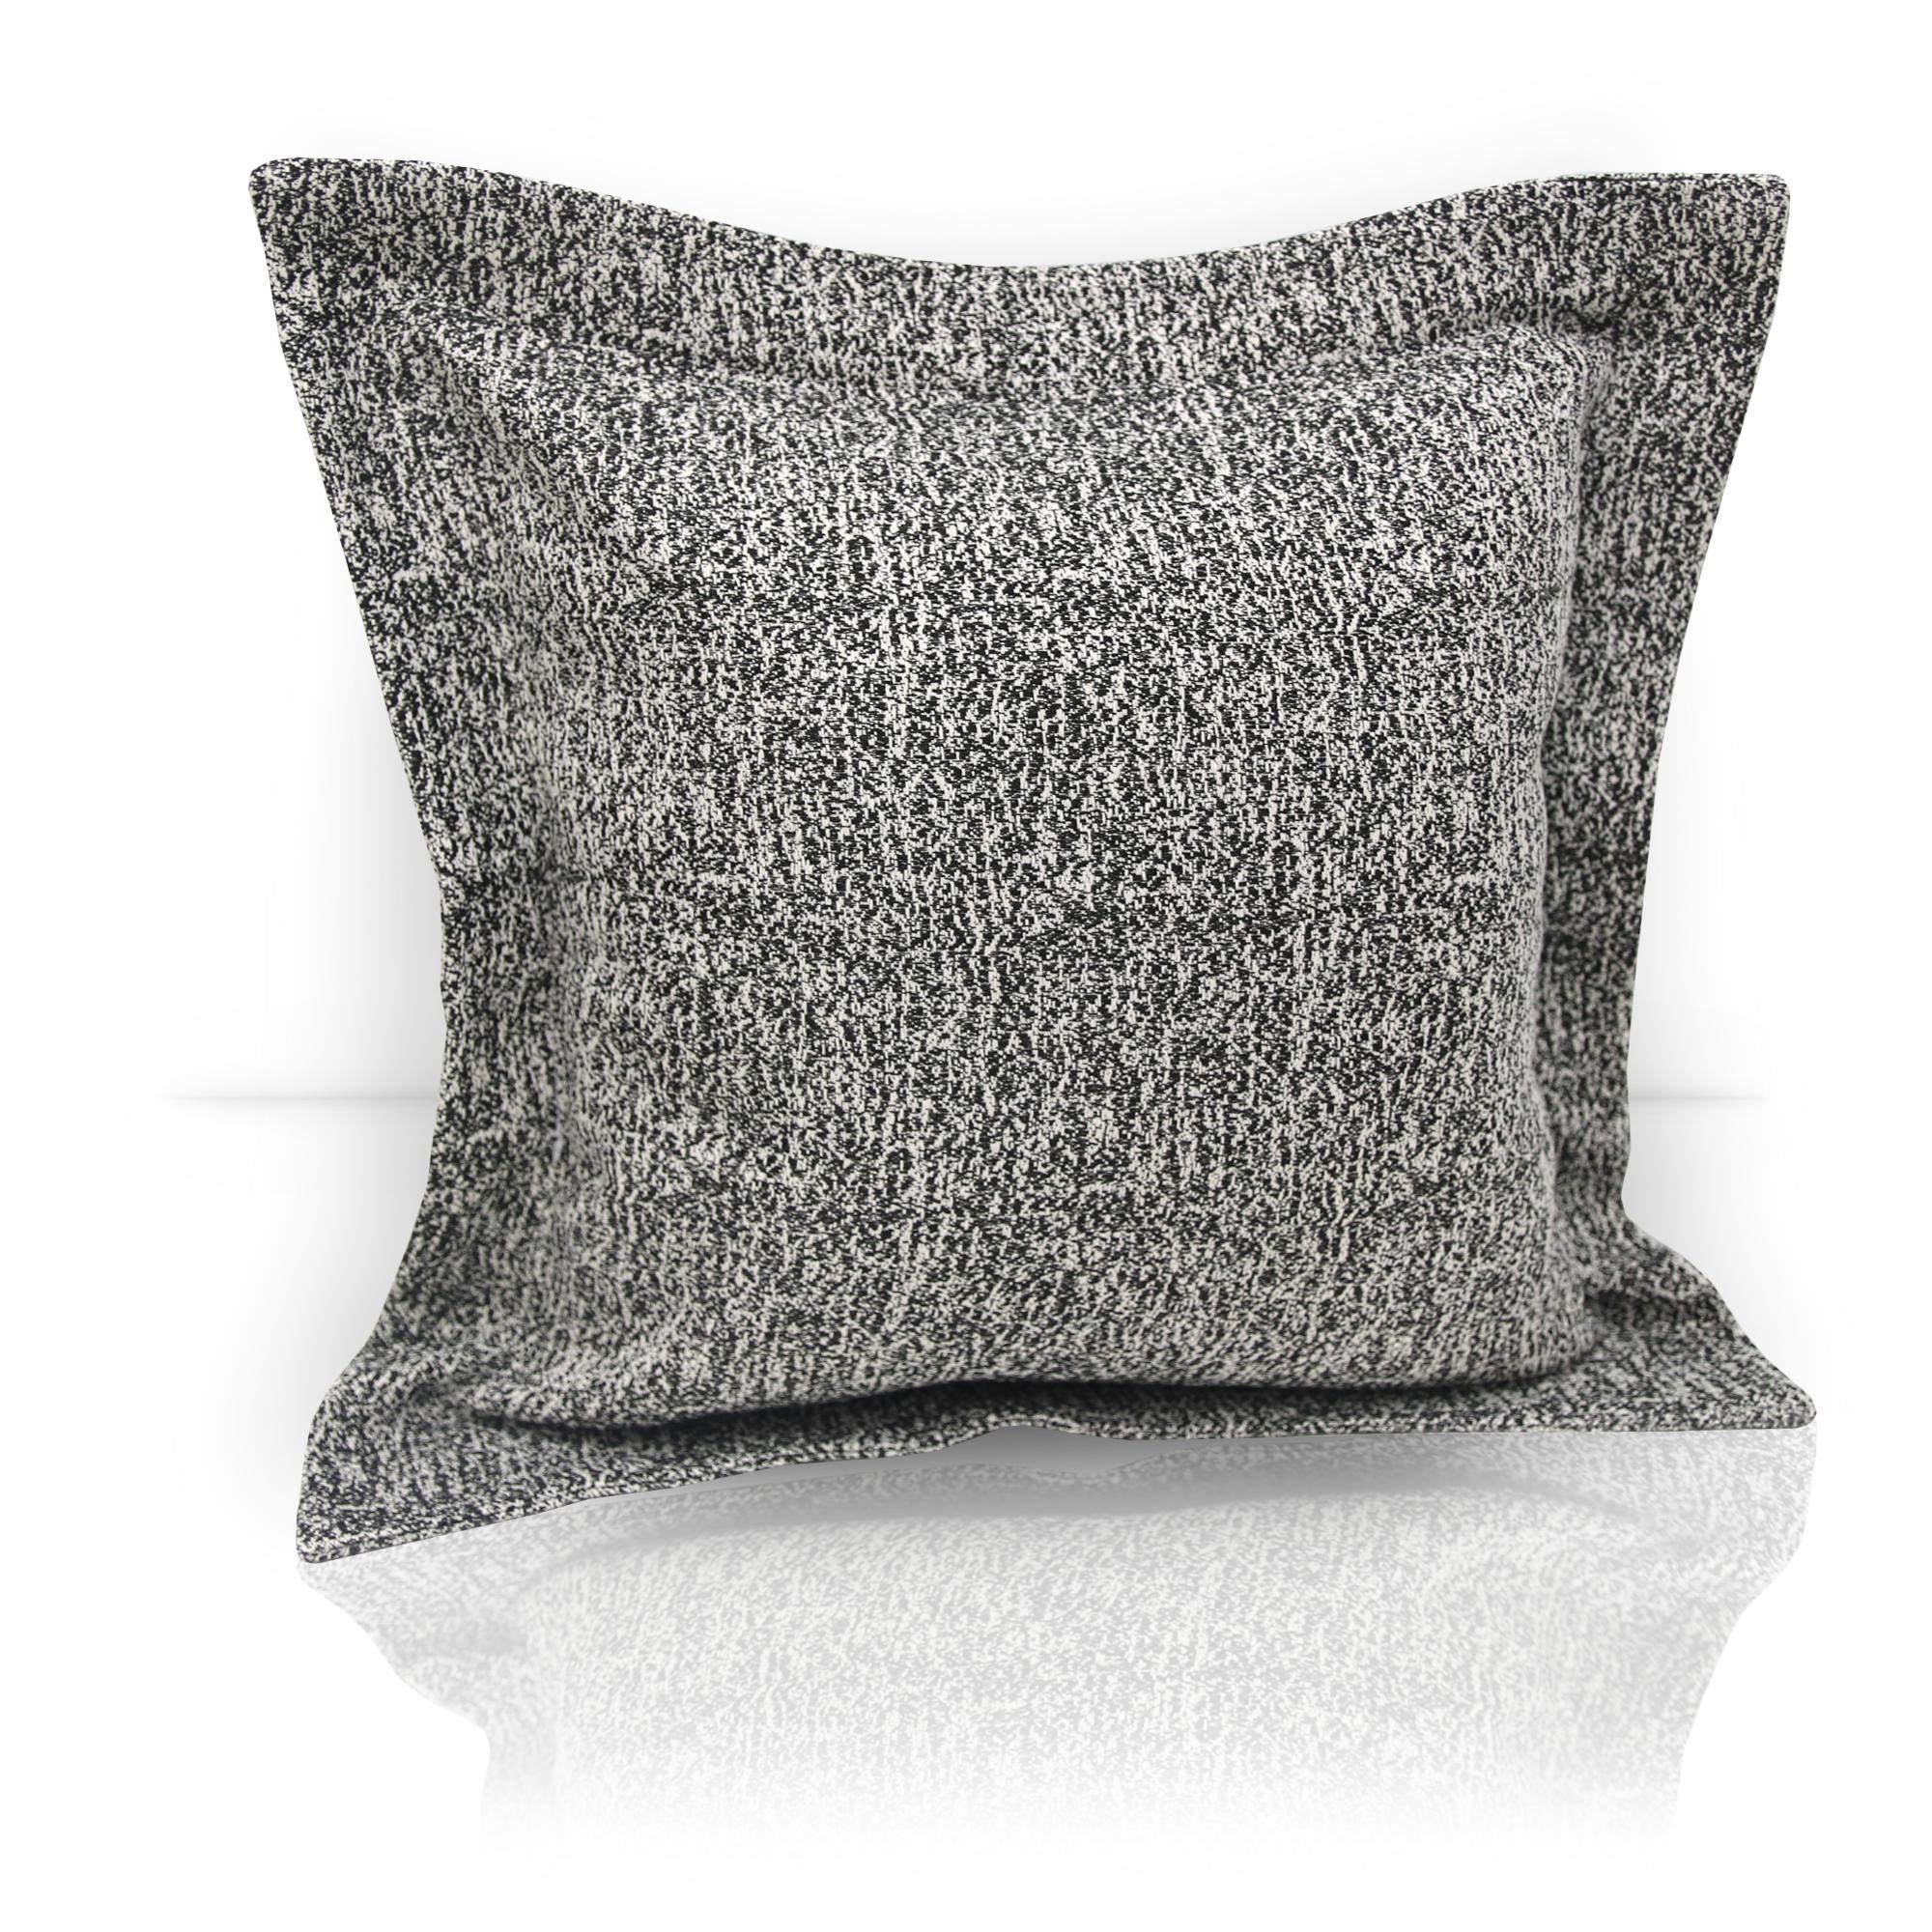 Декоративные подушки «Черно-белые» для себя и в подарок ⮕ Интернет магазина «Первое ателье»™